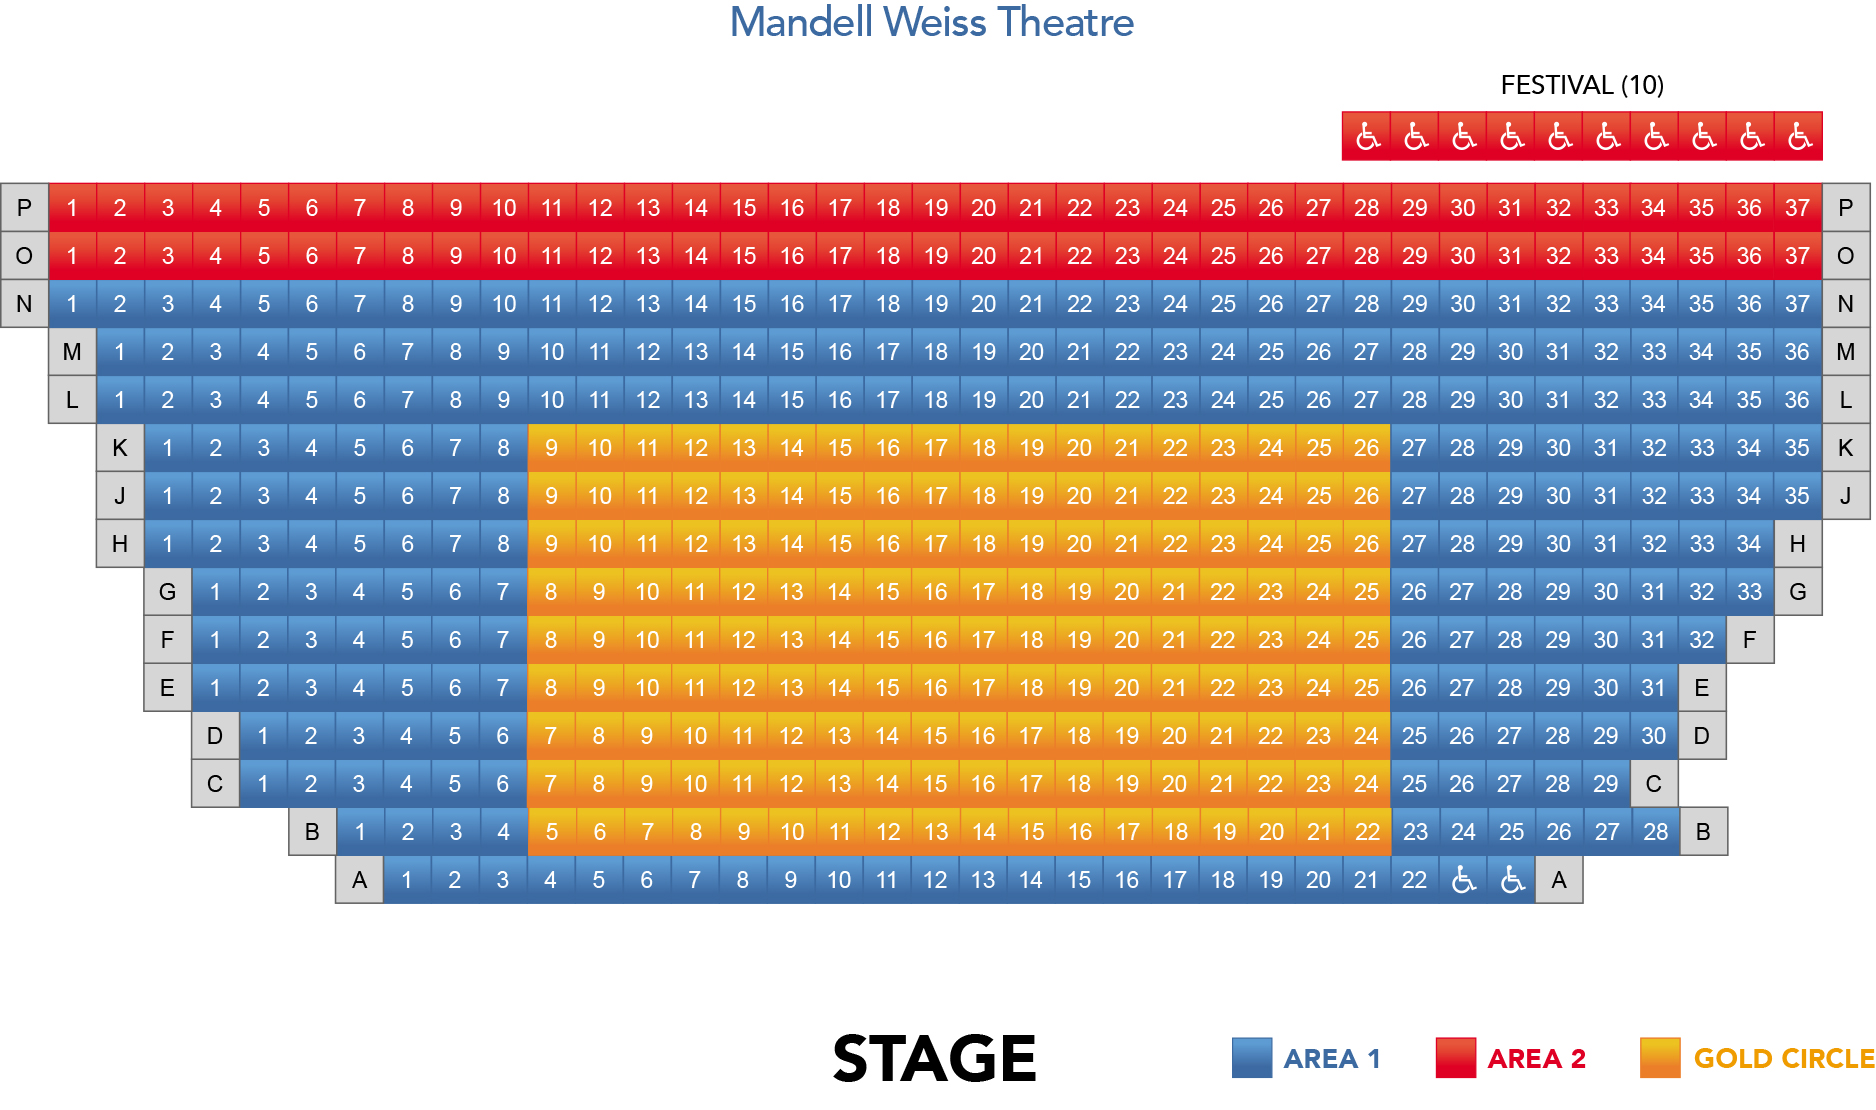 Mandell Weiss Theatre